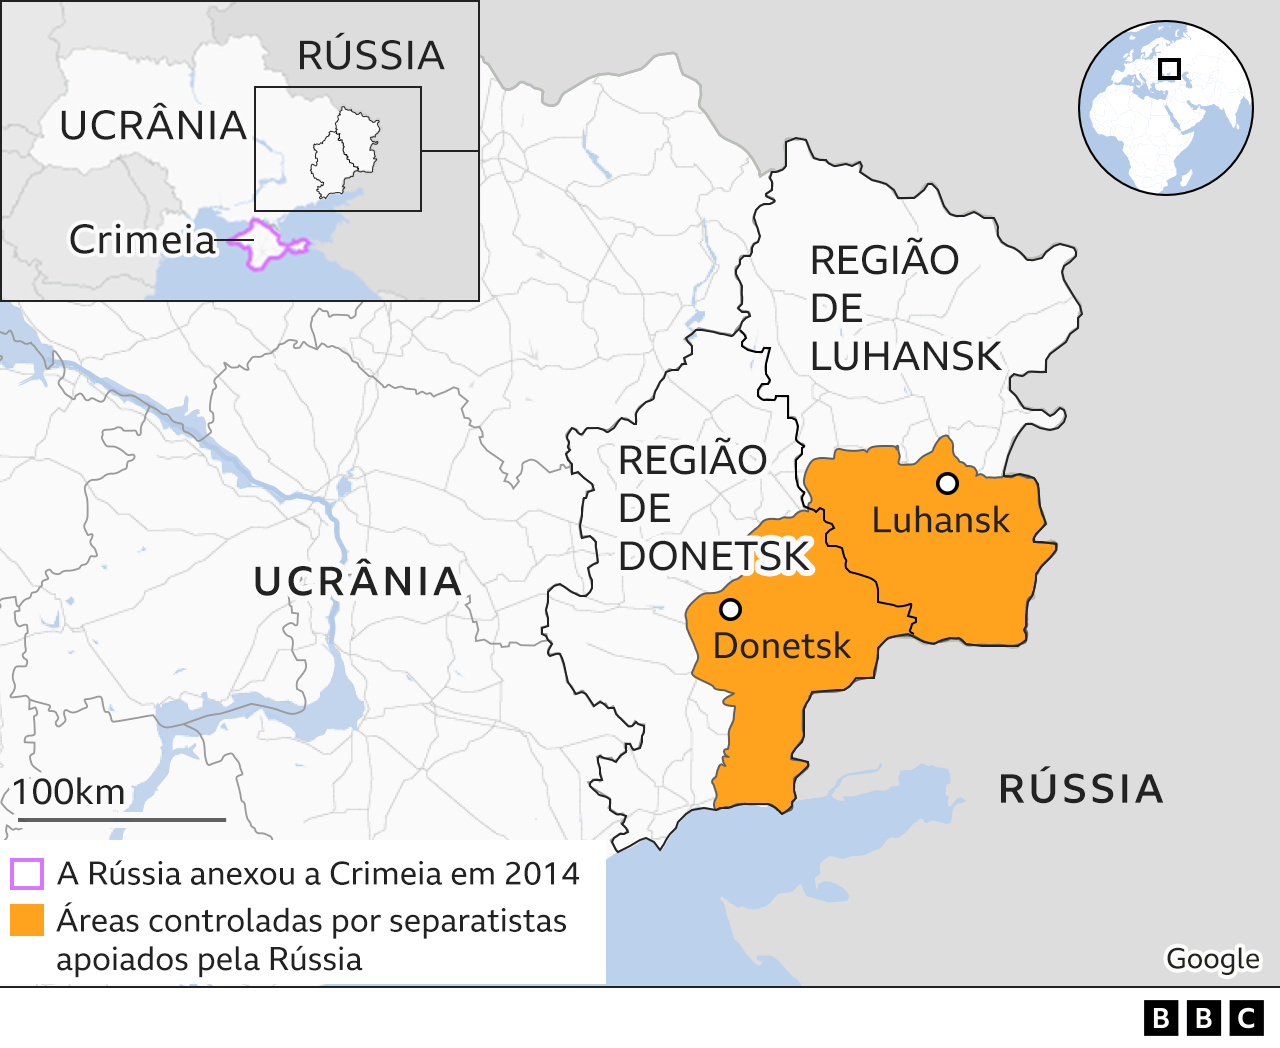 Rússia x Ucrânia: quais são os países aliados de Putin? - BBC News